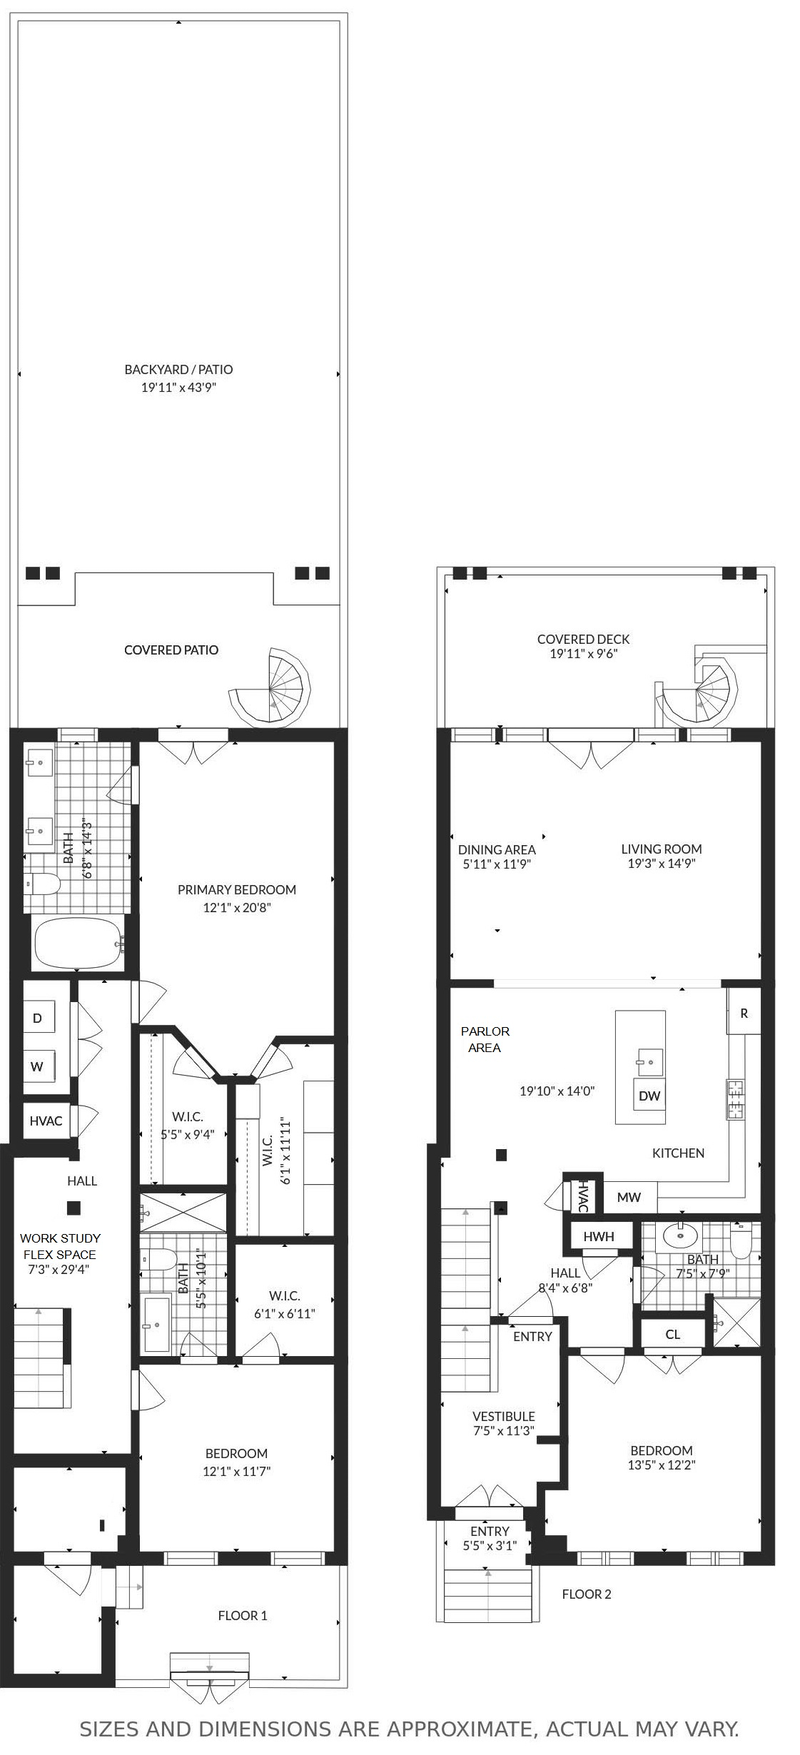 Floorplan for 145 Sussex St, 1